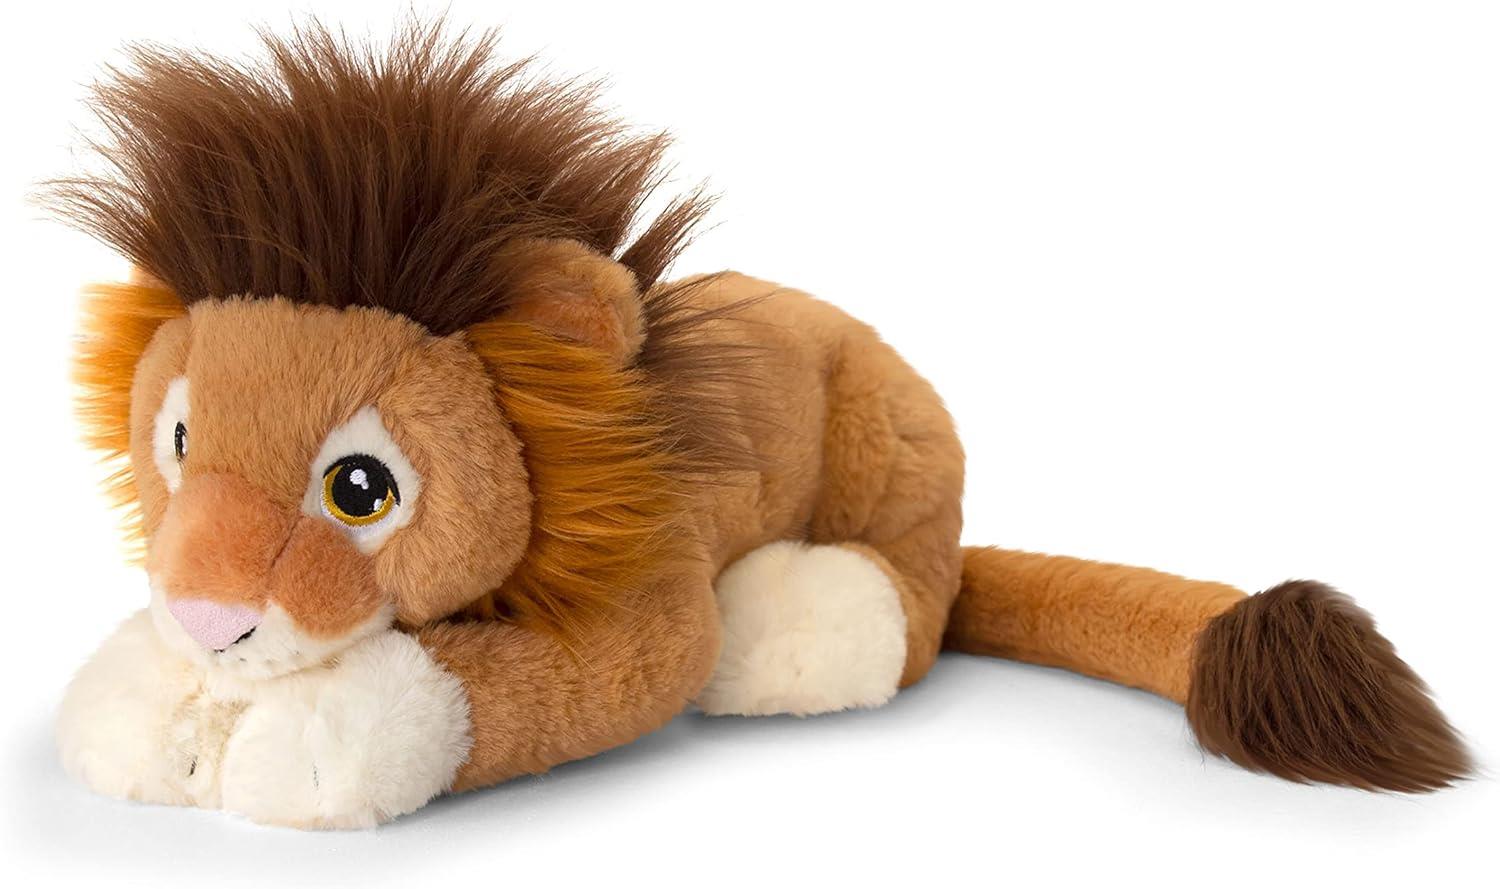 Keel Lion Soft Toy (Keel Eco) 35cm